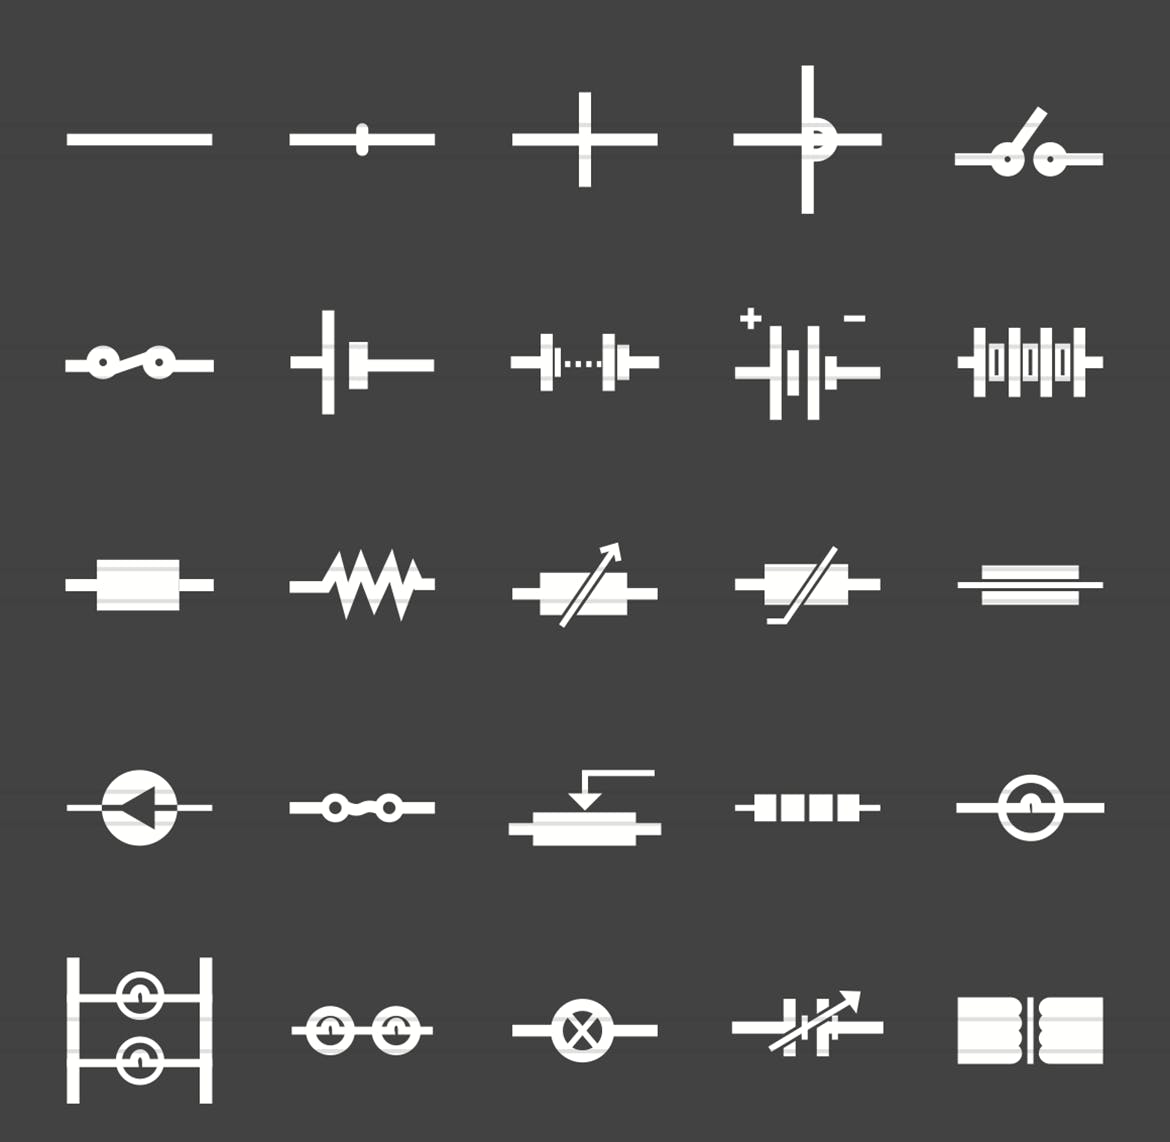 50枚电路线路板主题反转色字体非凡图库精选图标 50 Electric Circuits Glyph Inverted Icons插图(1)